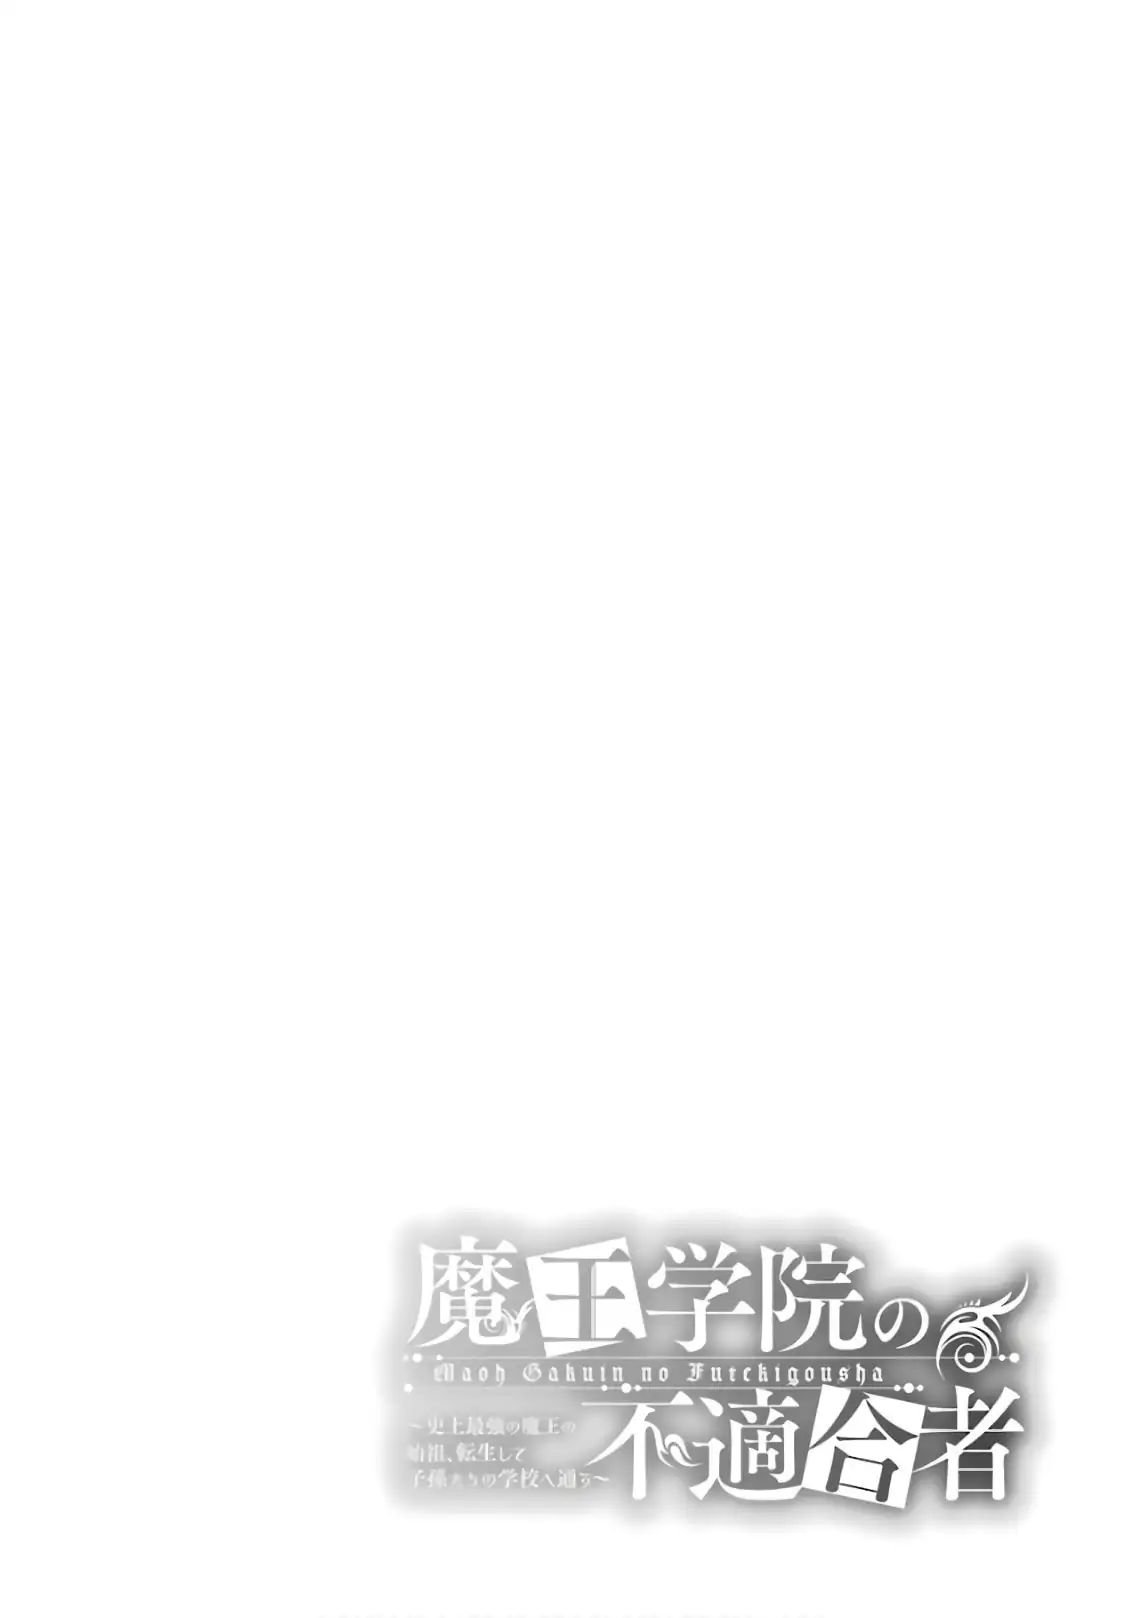 😮😄😄😄😄😂 #manga Maou Gakuin no - Manga News and Chapter